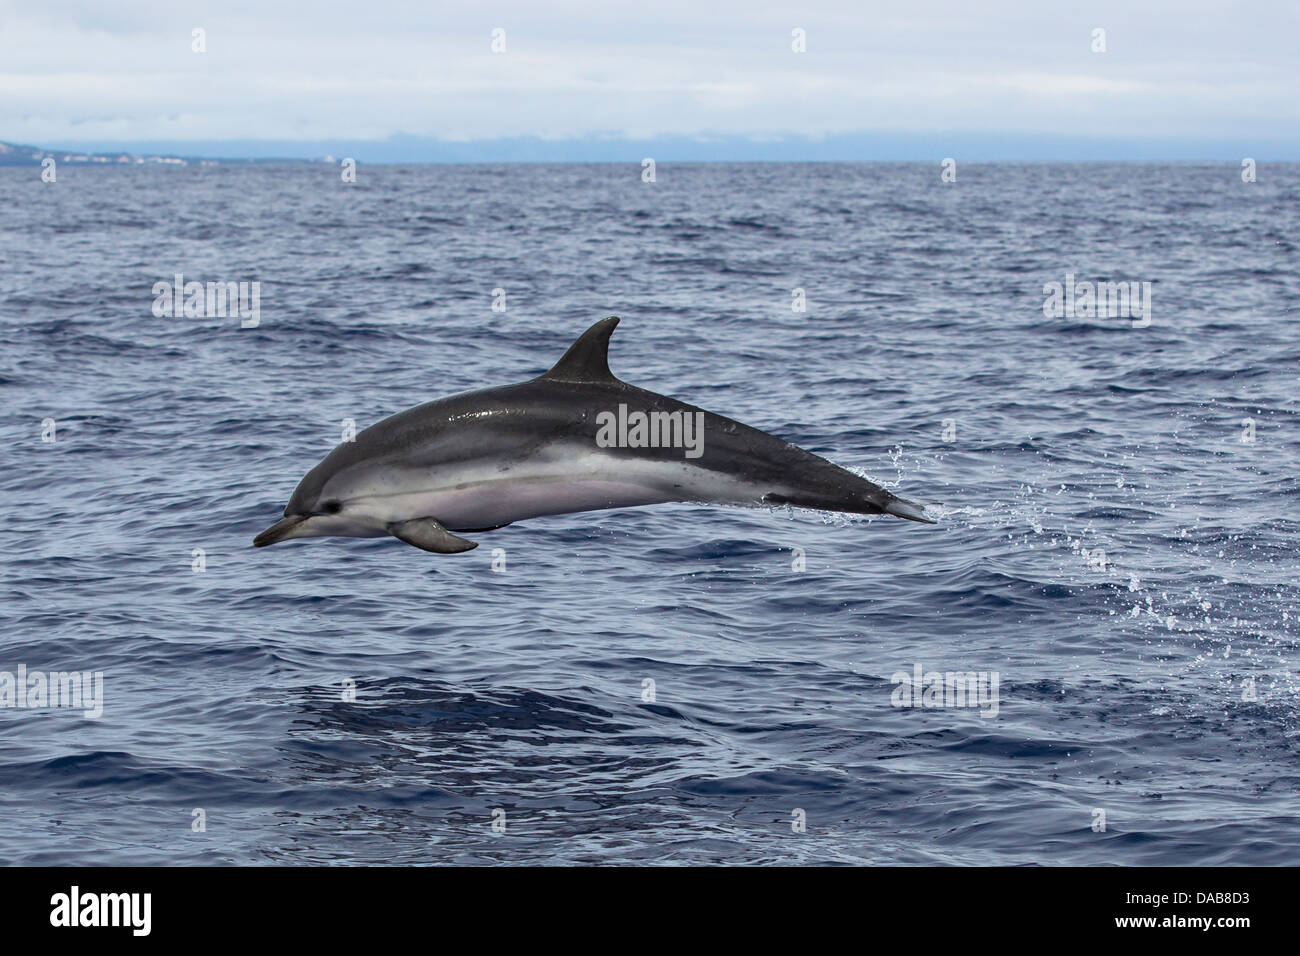 Striped Dolphin, Stenella coeruleoalba, Blau-weißer Delphin, leaping high, fast swimming dolphin, Lajes do Pico, Azores Stock Photo